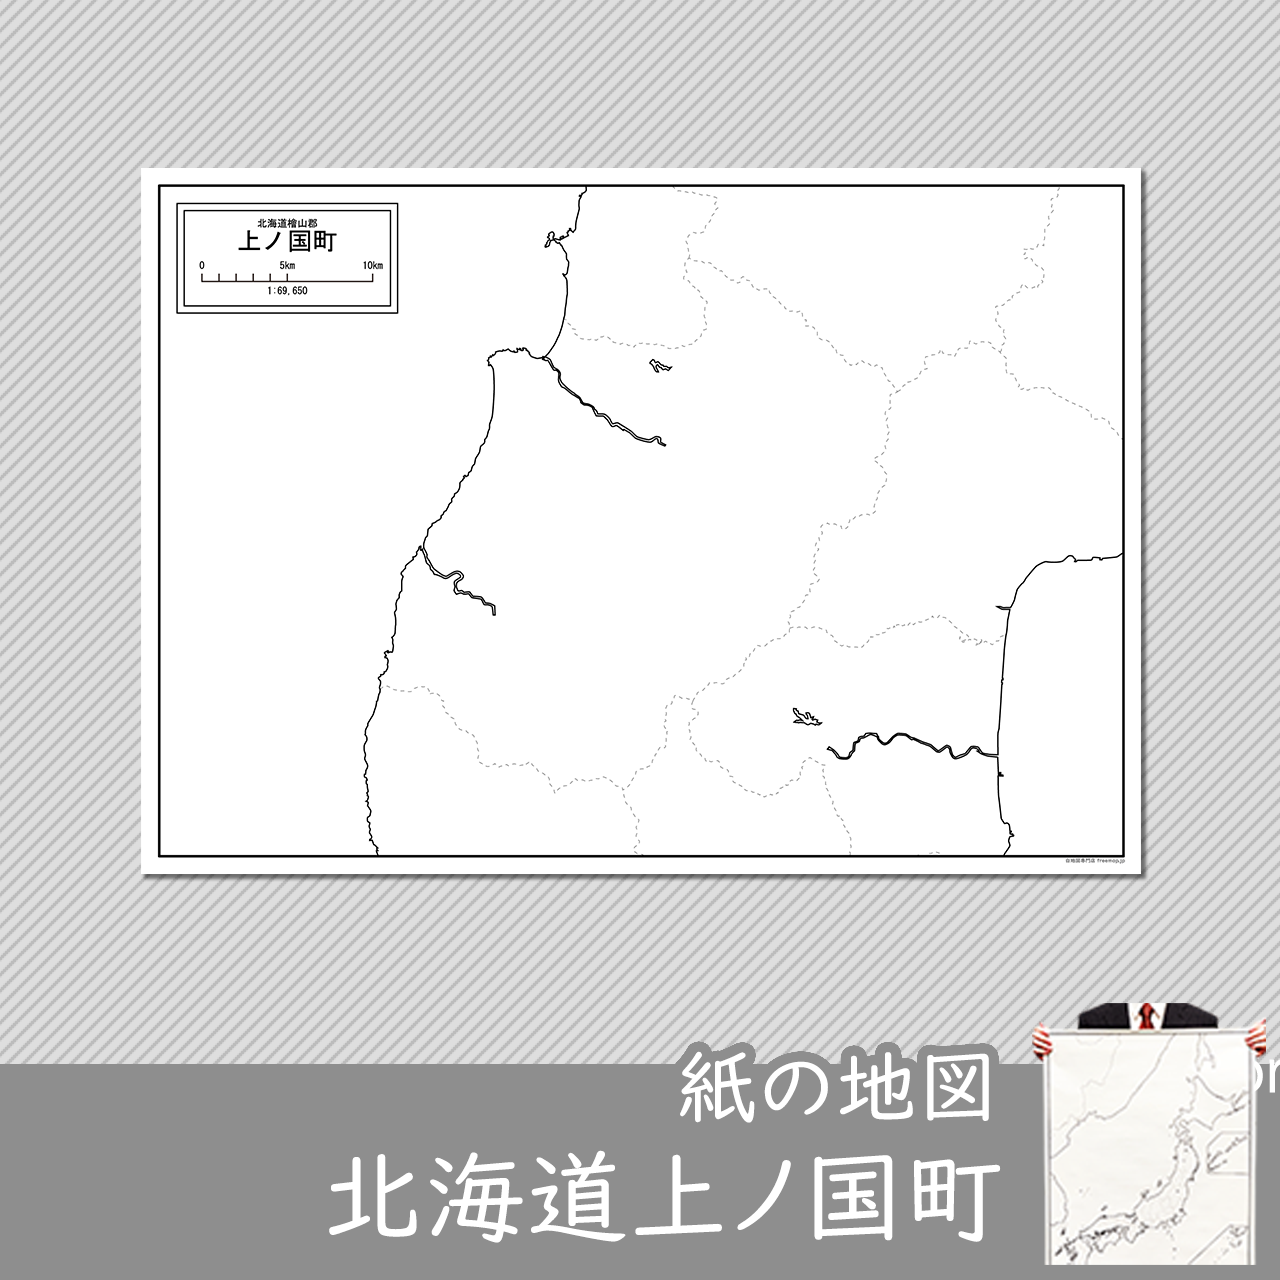 上ノ国町の紙の白地図のサムネイル